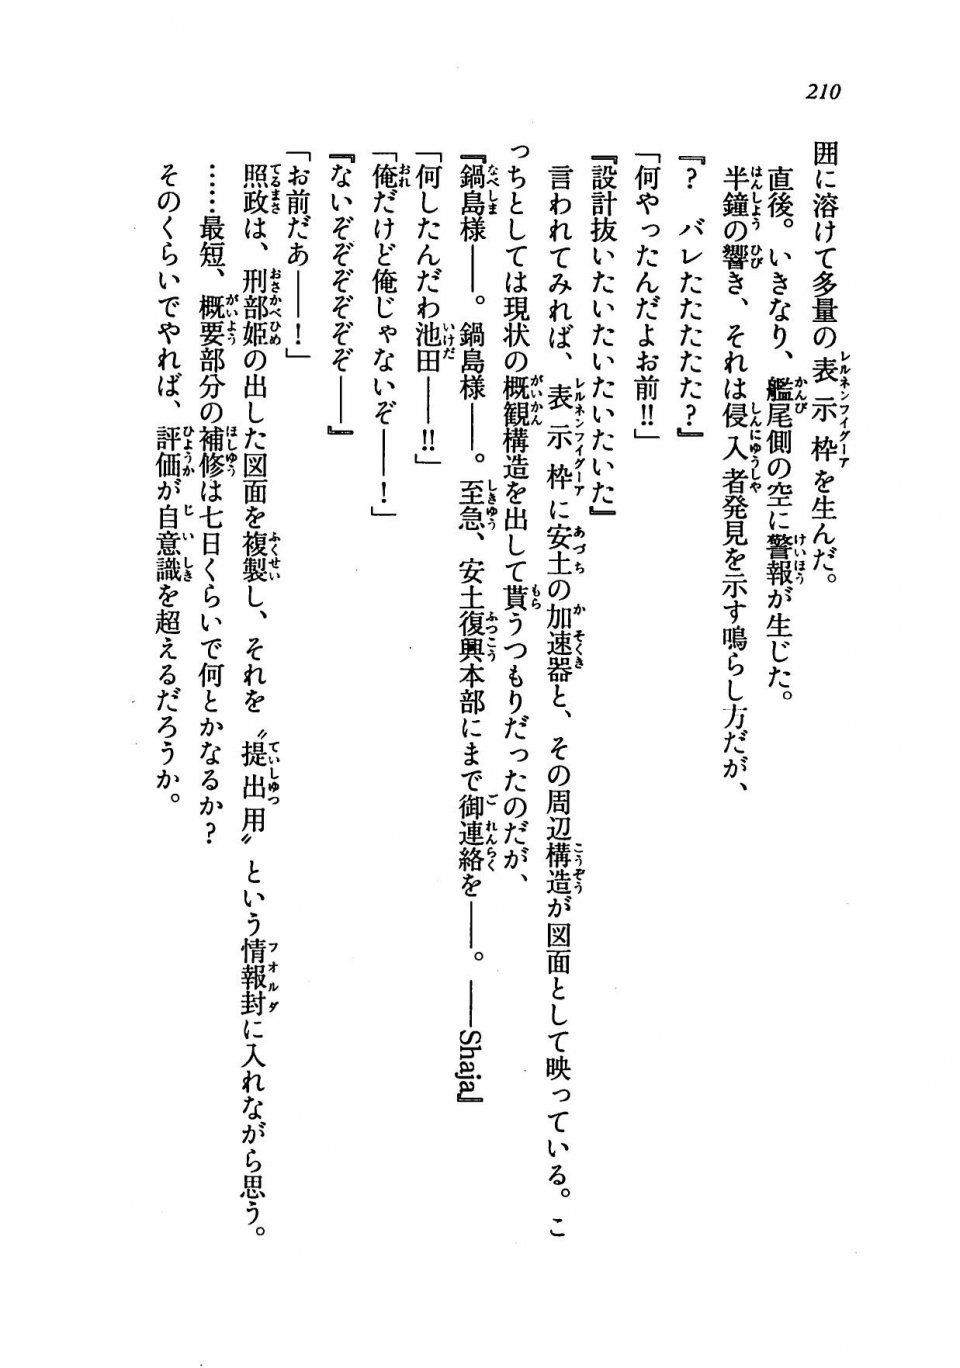 Kyoukai Senjou no Horizon LN Vol 19(8A) - Photo #210